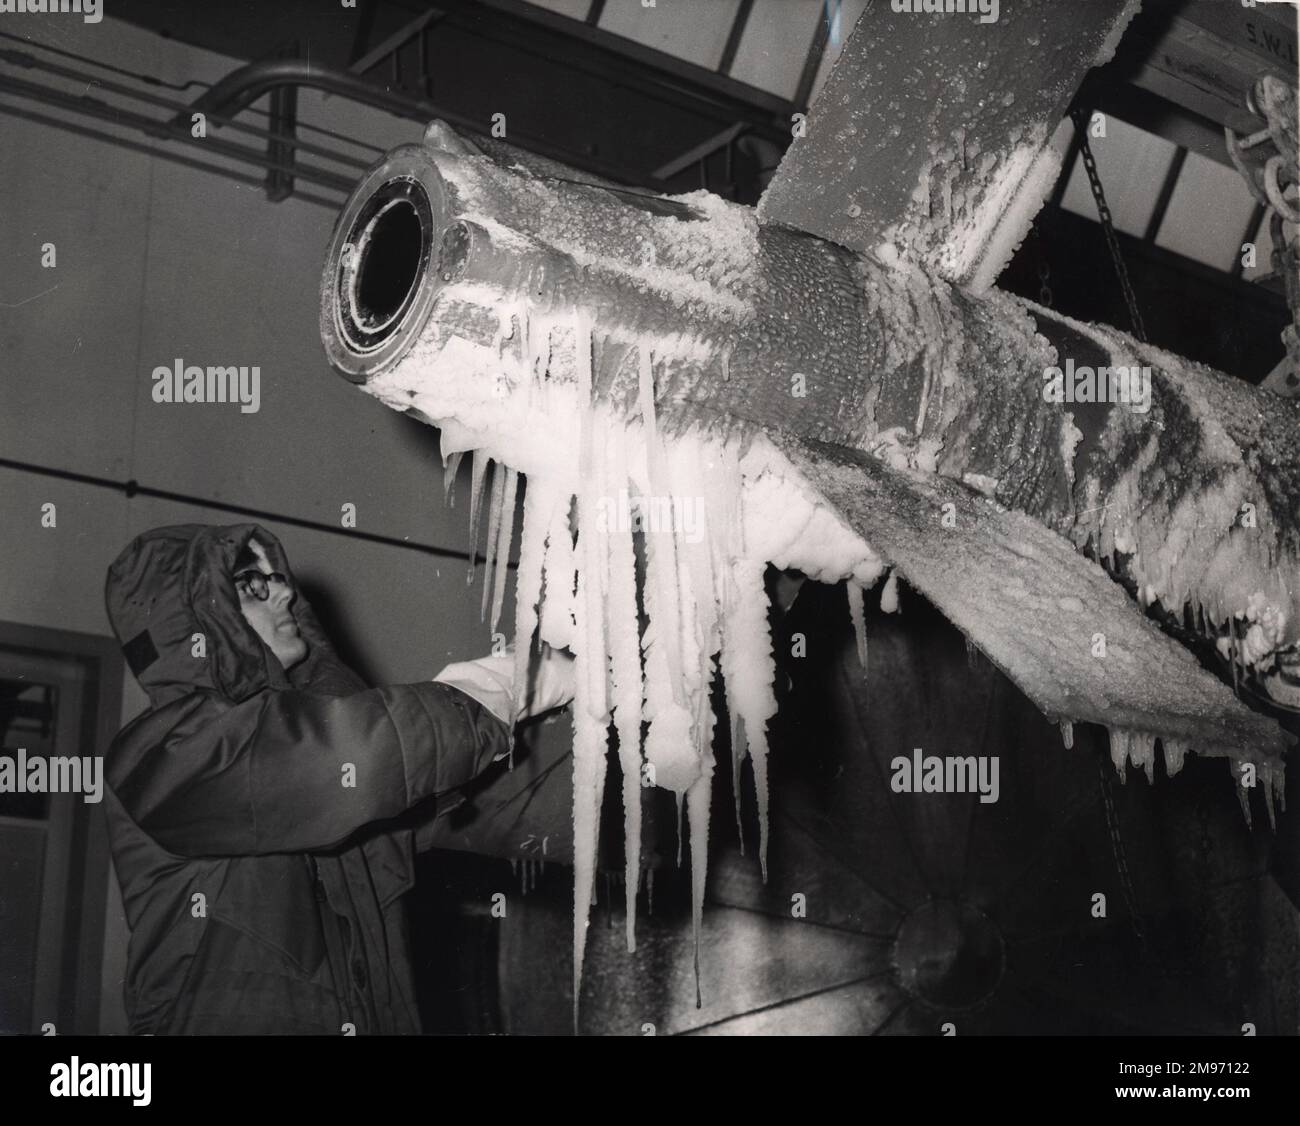 Un tecnico ispeziona un missile armstrong Whitworth Seaslug da nave ad aria dopo aver subito test a temperature artiche nella camera climatica dell'azienda. Novembre 1959. Foto Stock